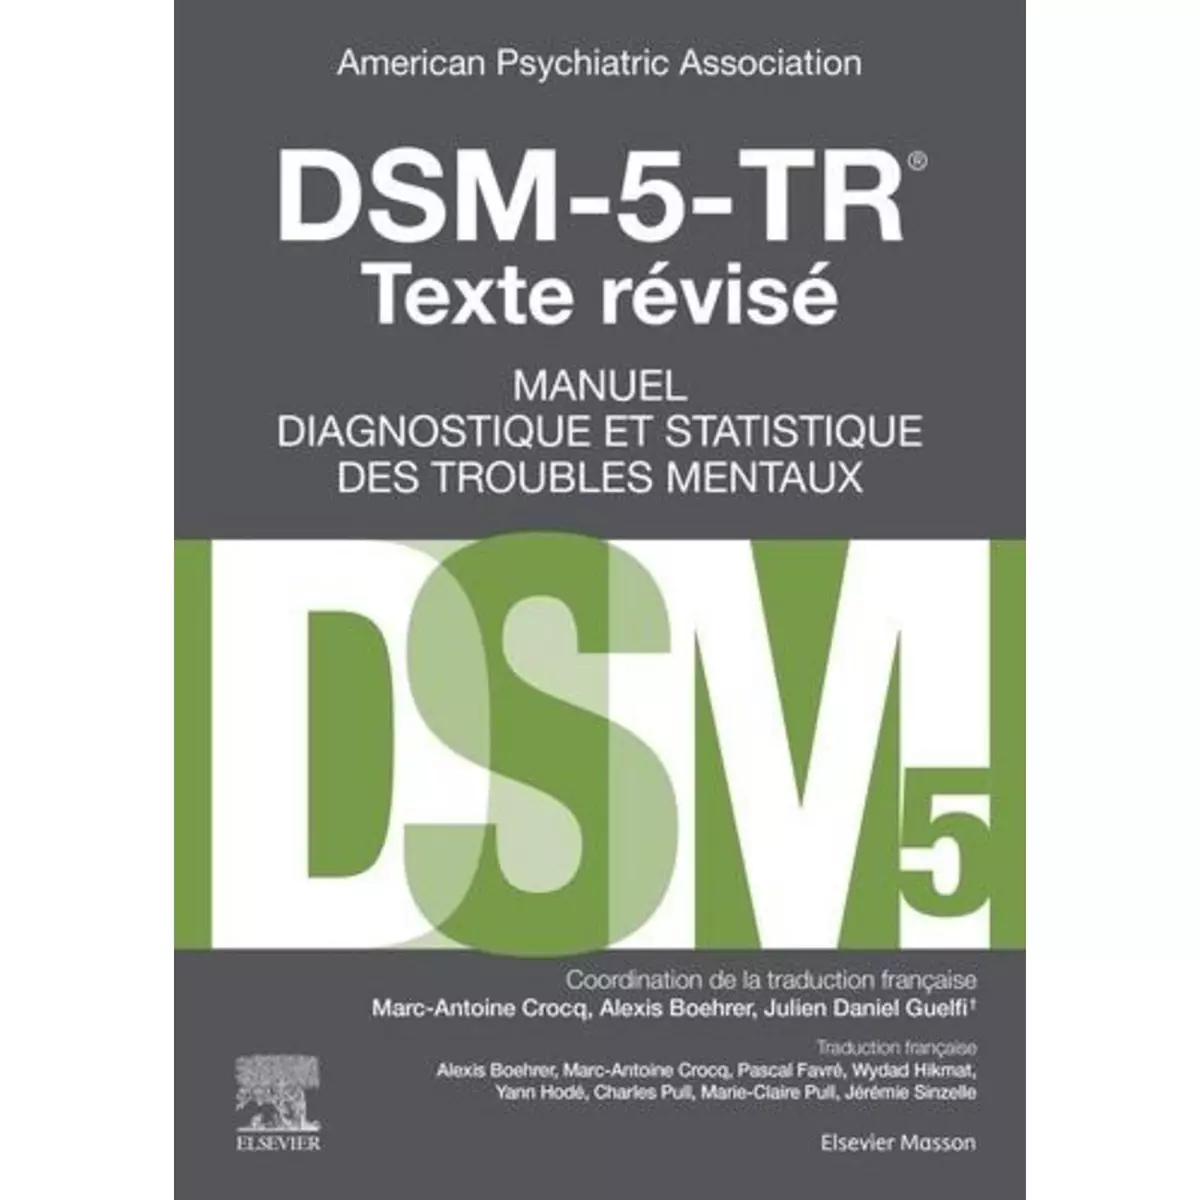  DSM-5-TR MANUEL DIAGNOSTIQUE ET STATISTIQUE DES TROUBLES MENTAUX. EDITION REVUE ET CORRIGEE, Crocq Marc-Antoine